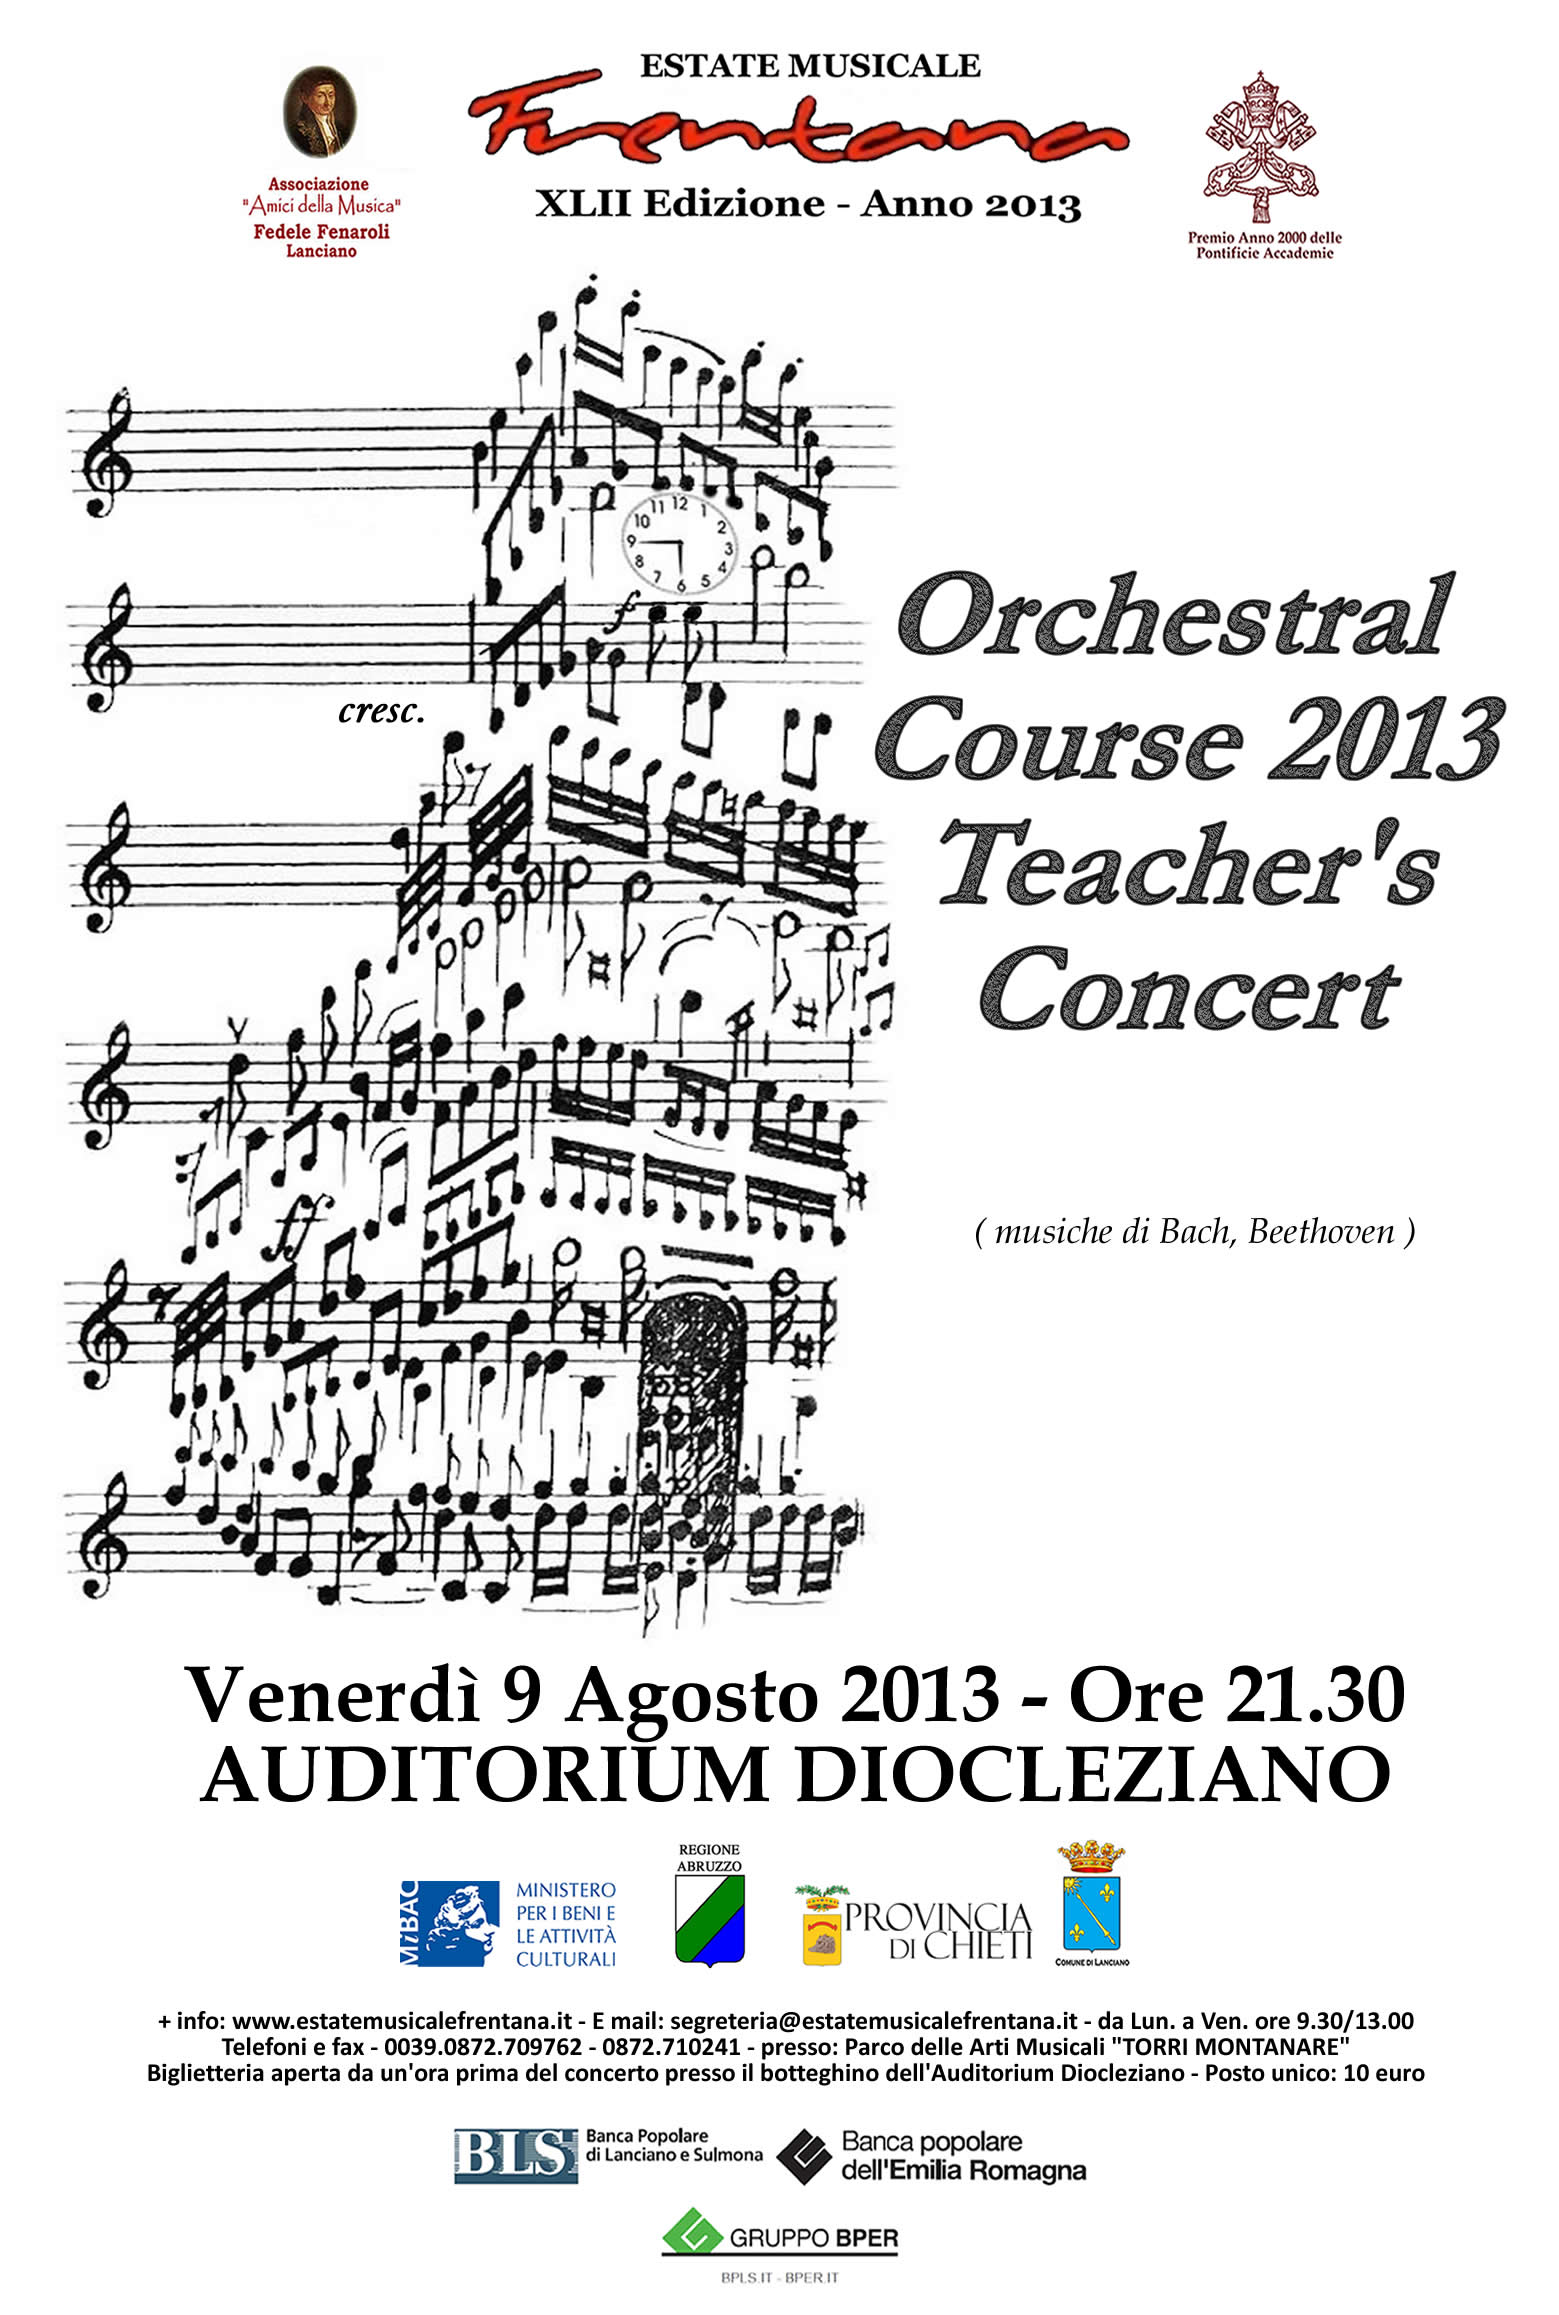 Orchestral Course 2013 Teachers’ Concert